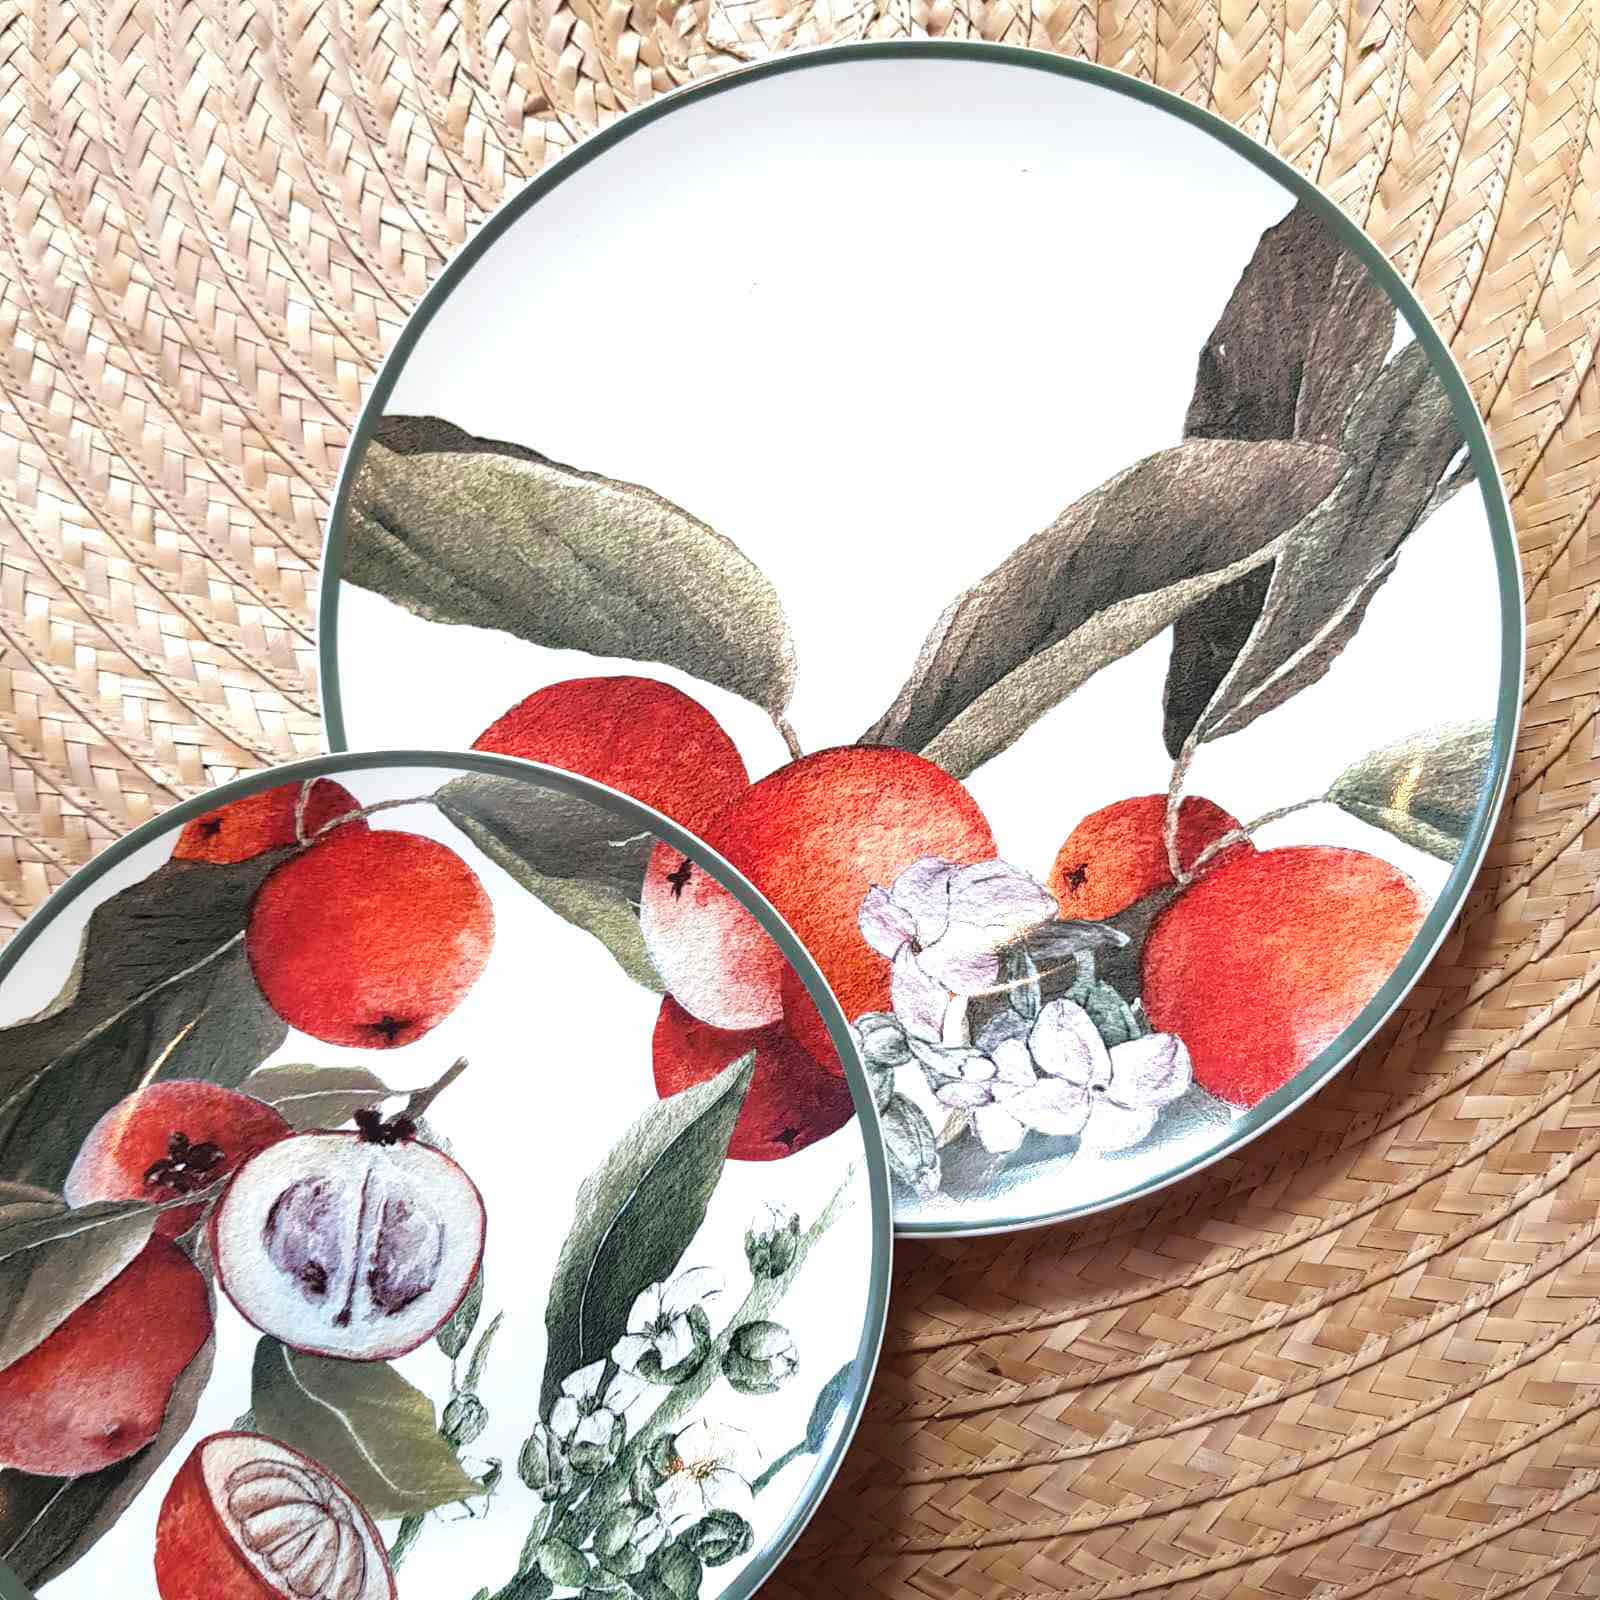 Ceramic Plates With Velvet Apple Design Wallpaper